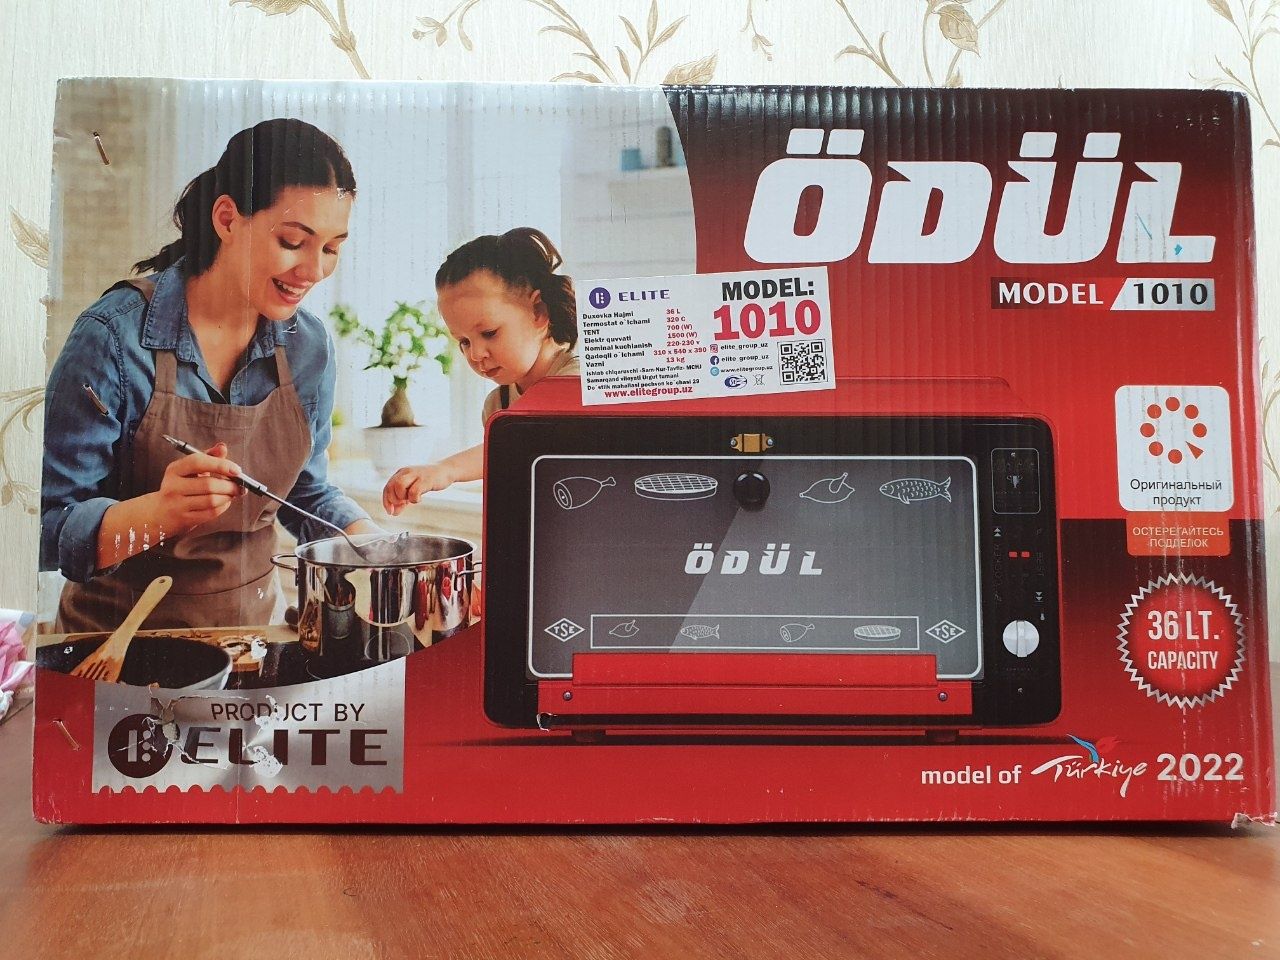 Новая Электрическая печь ODUL model 1010